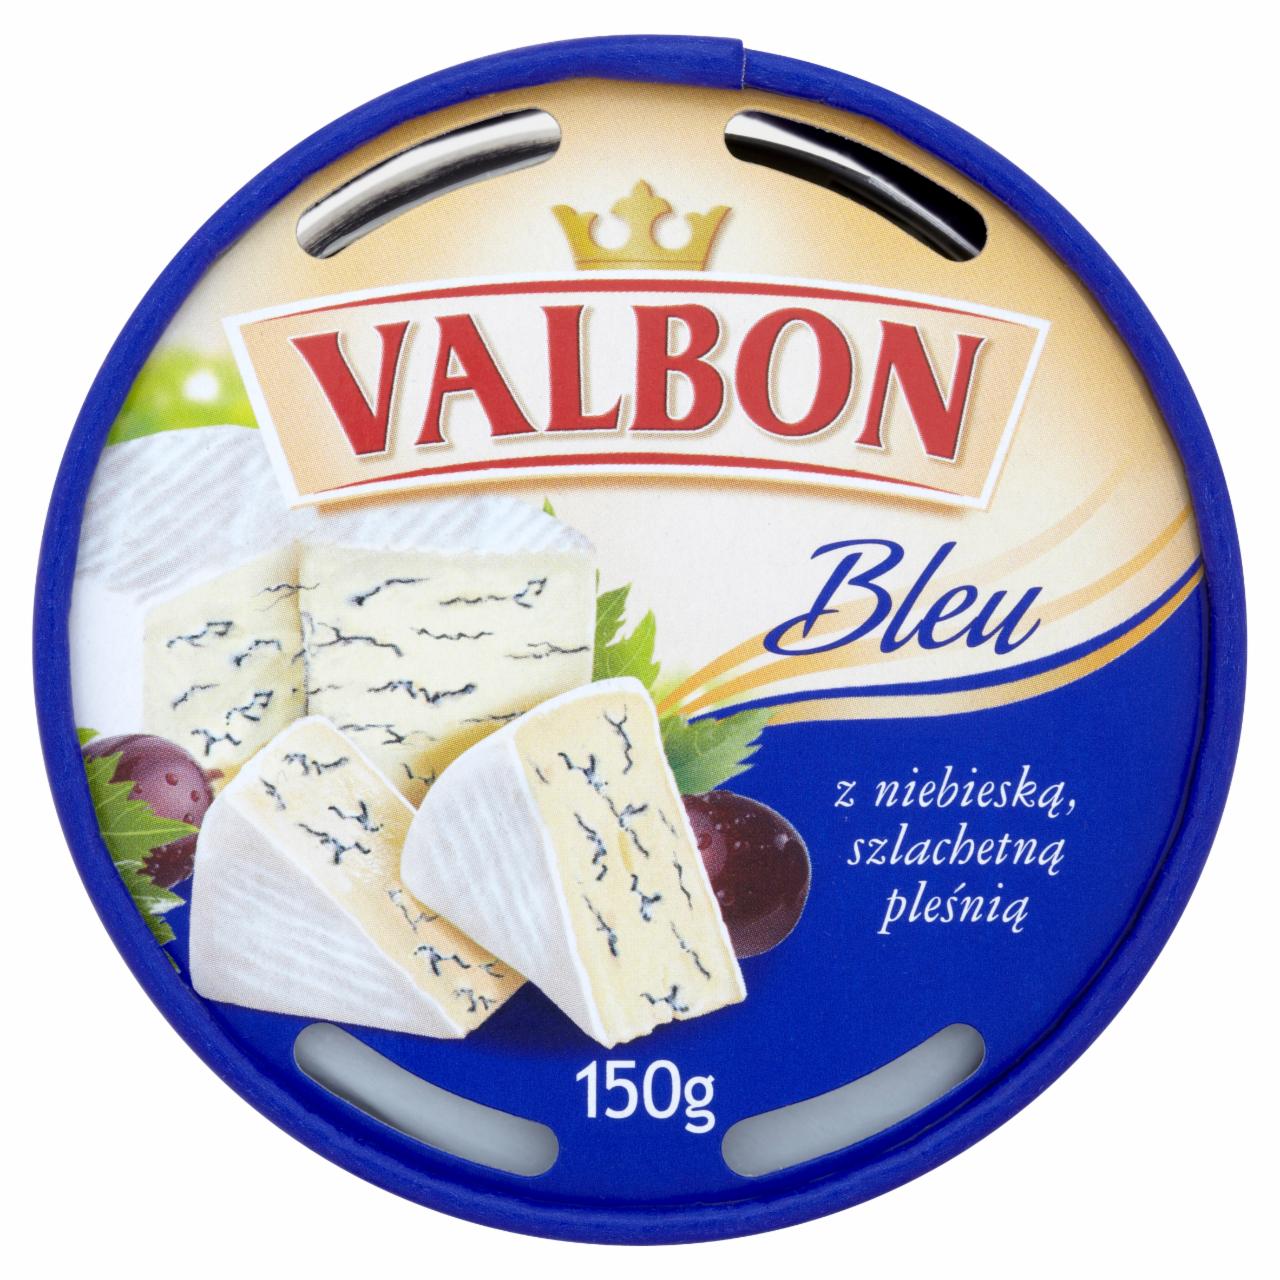 Zdjęcia - Valbon Bleu z niebieską szlachetną pleśnią 150 g